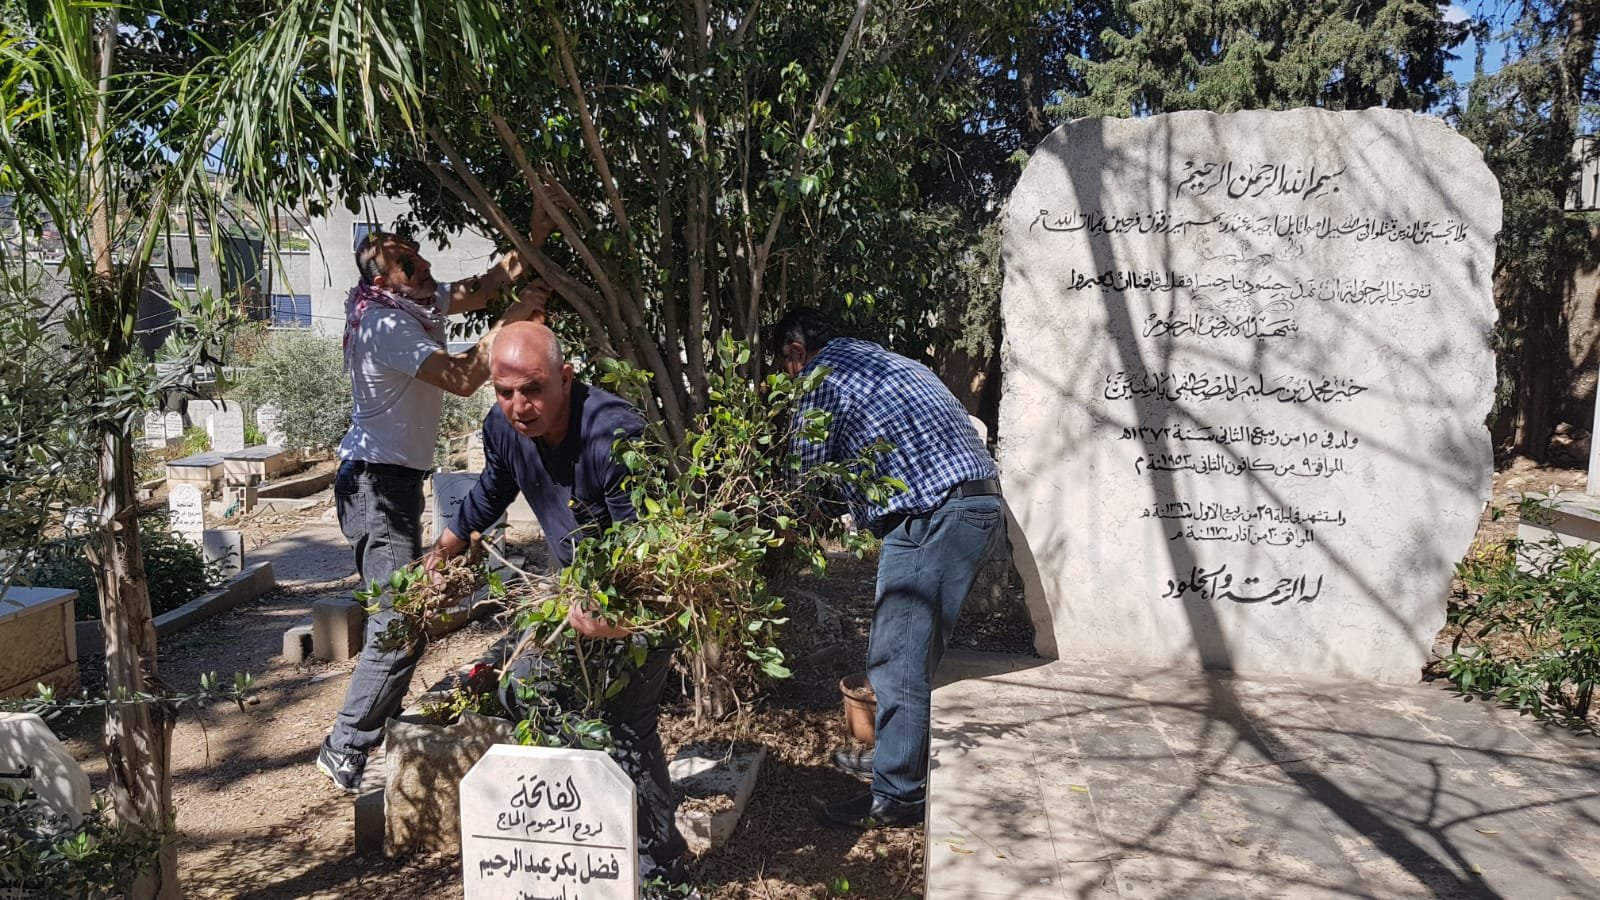 اللجنة الشعبية عرابة وشباب العودة يقومون بحملة تنظيف لضريح الشهيد خير ياسين قبيل ذكرى يوم الأرض -0